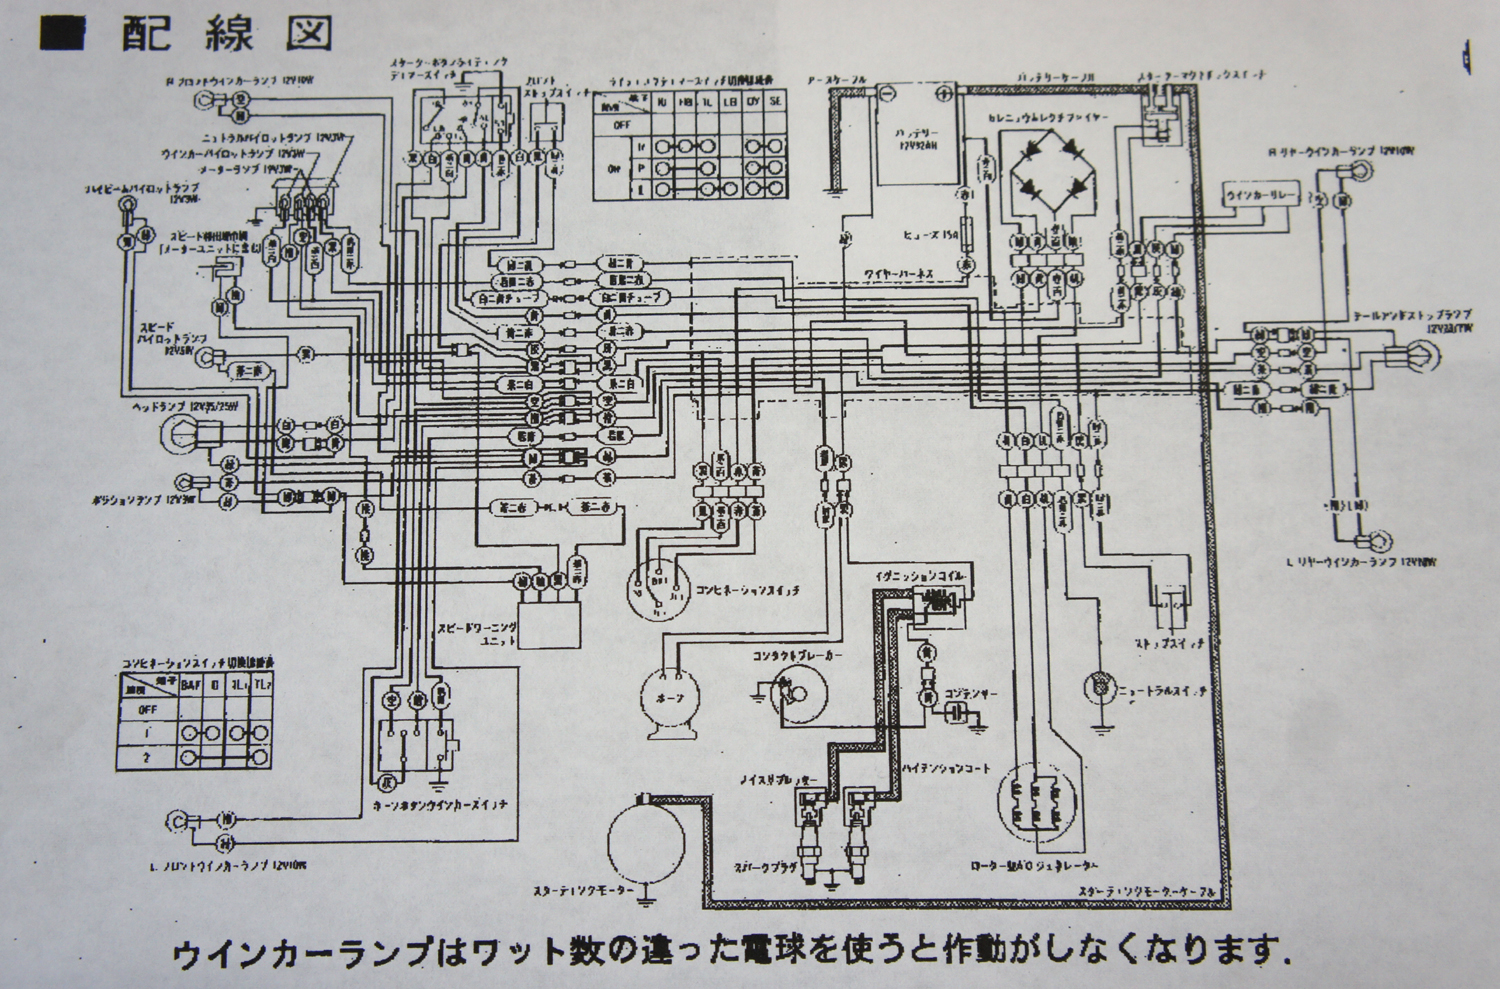 proper M/C builds: wiring diagram